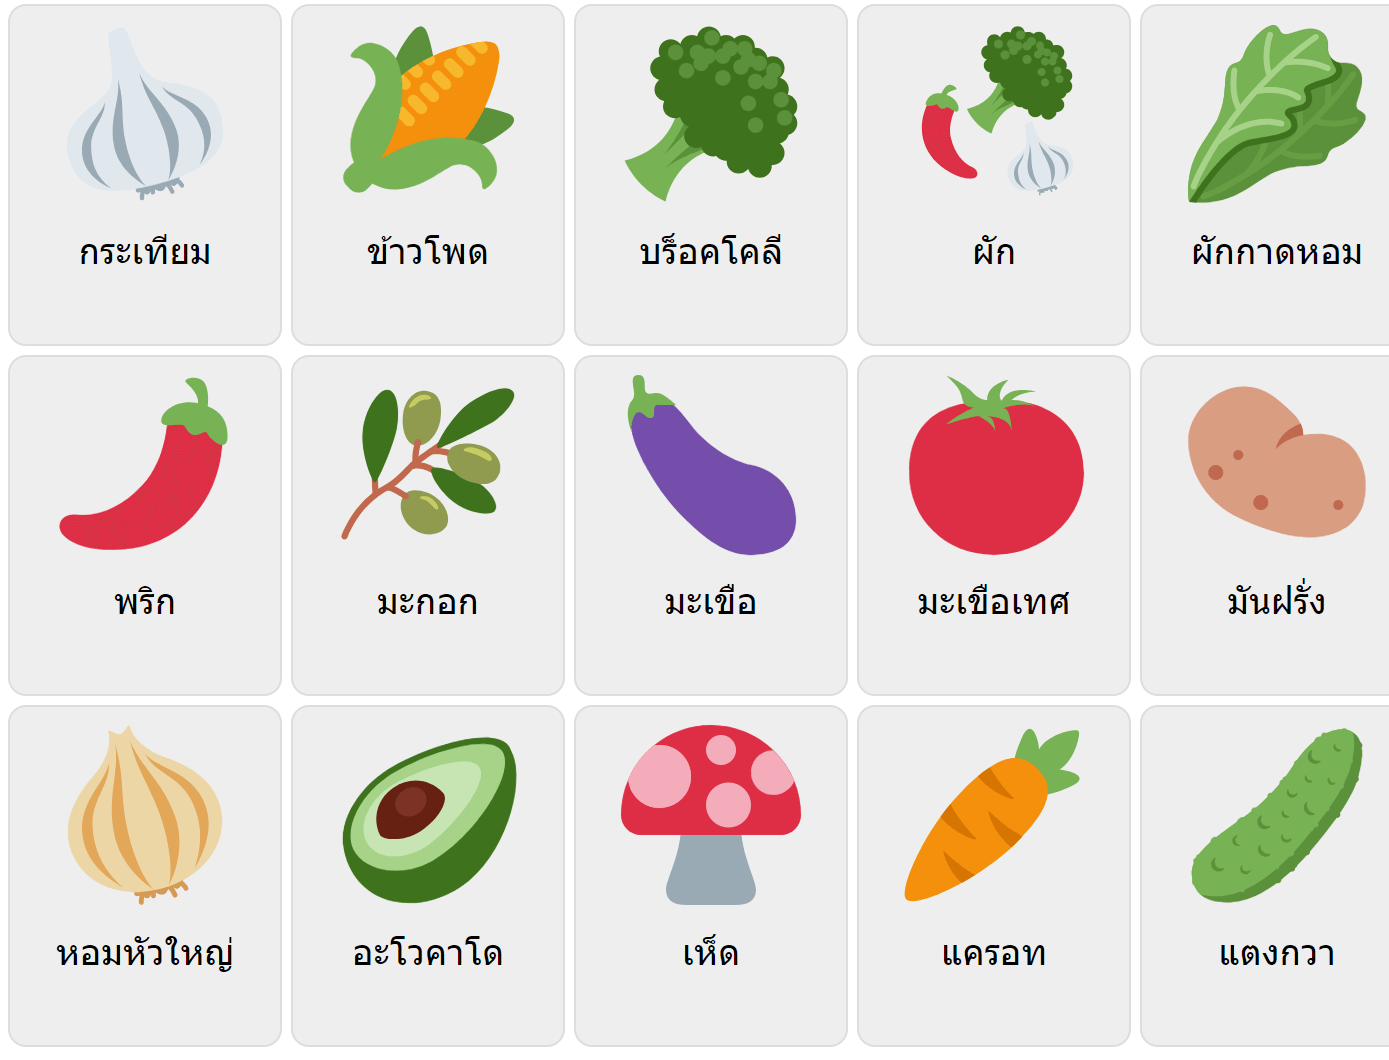 Vegetables in Thai